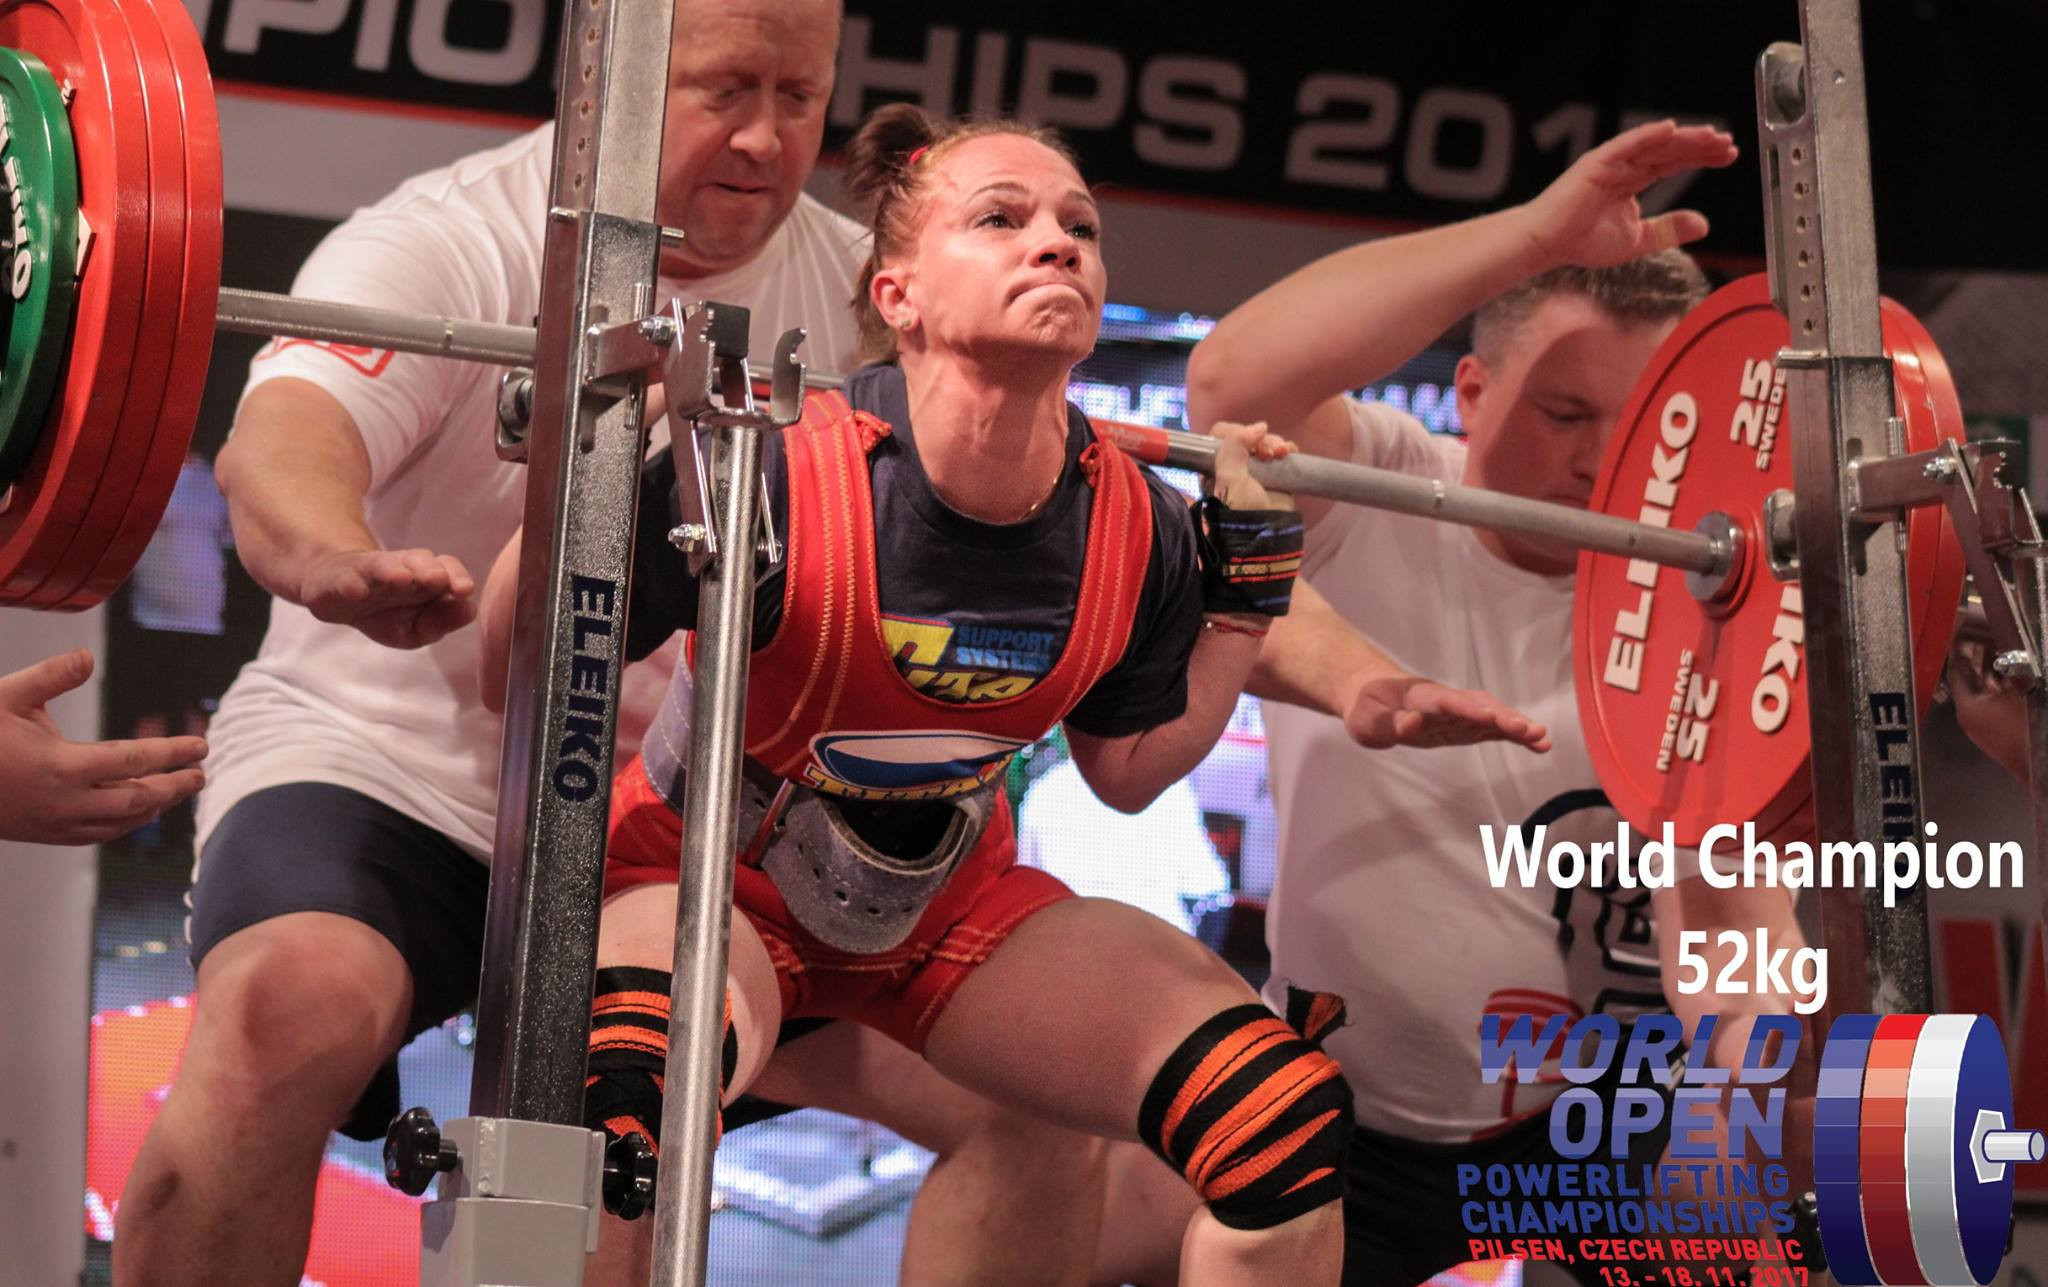 Natalia Salnikova won gold in the women's 52kg event ©IPF